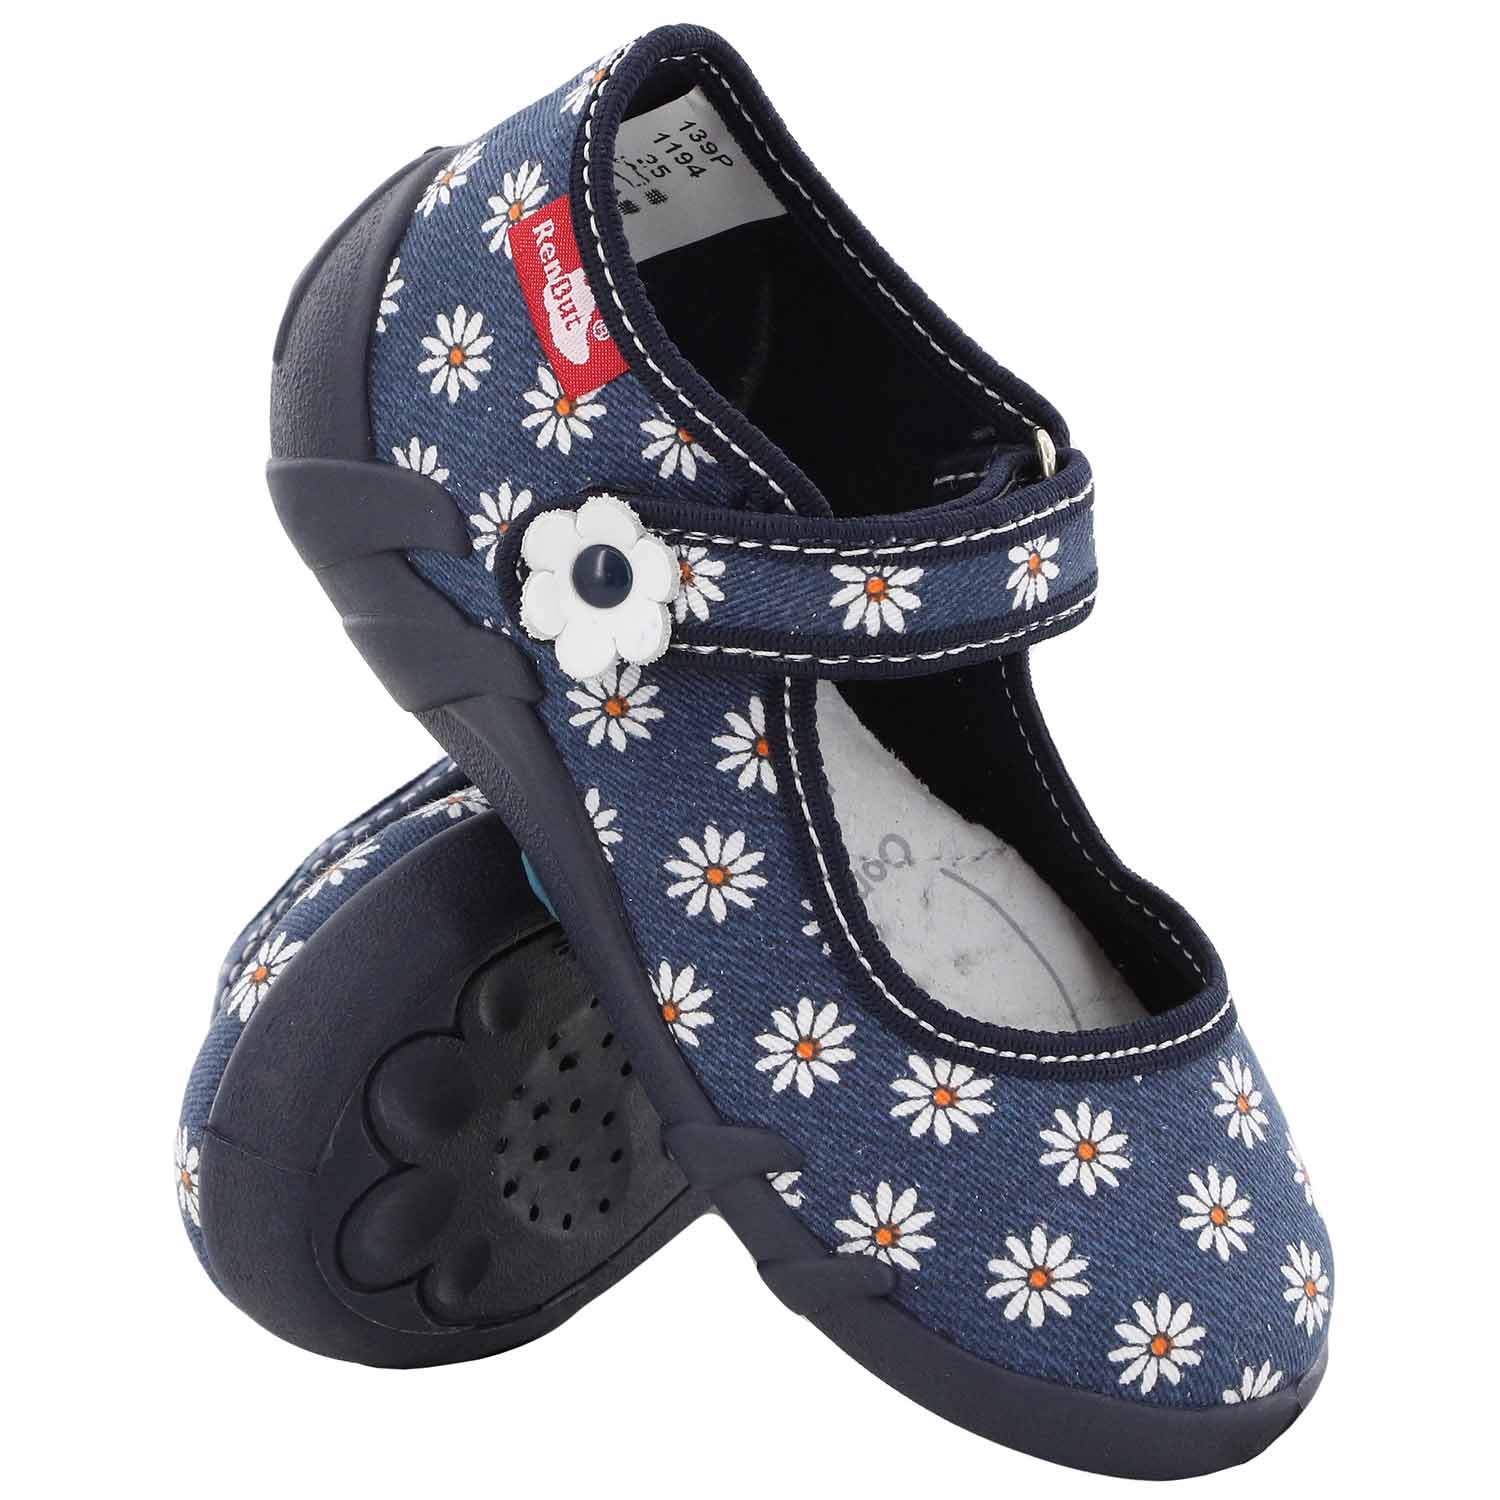 Pantofi fetite, din material textil, albastru inchis cu floricele albe